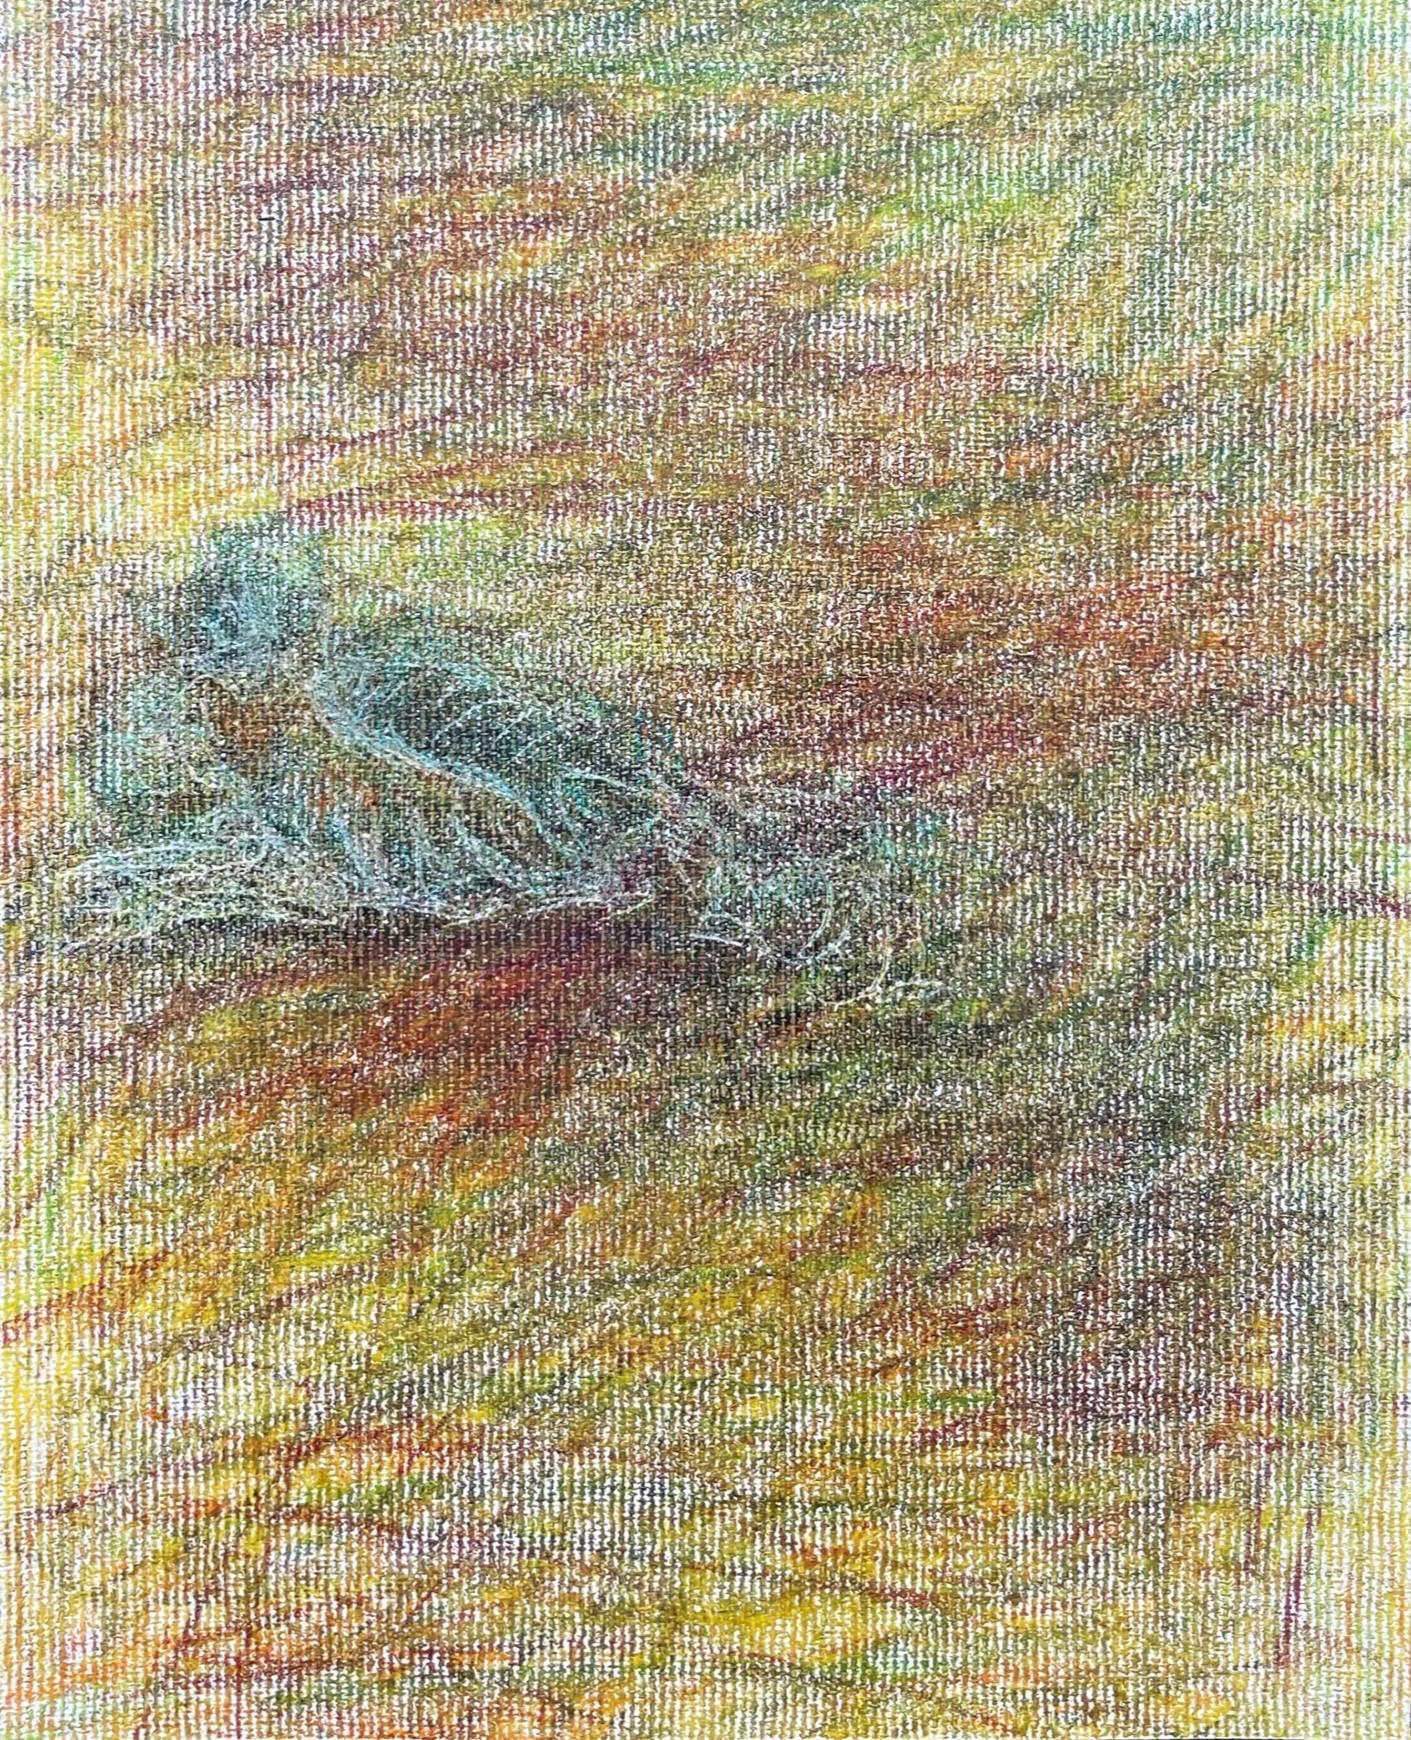 Body in the Field #11 - Landscape, Coloured Pencil, 21st Century, Red, Blue - Expressionnisme abstrait Art par Zsolt Berszán